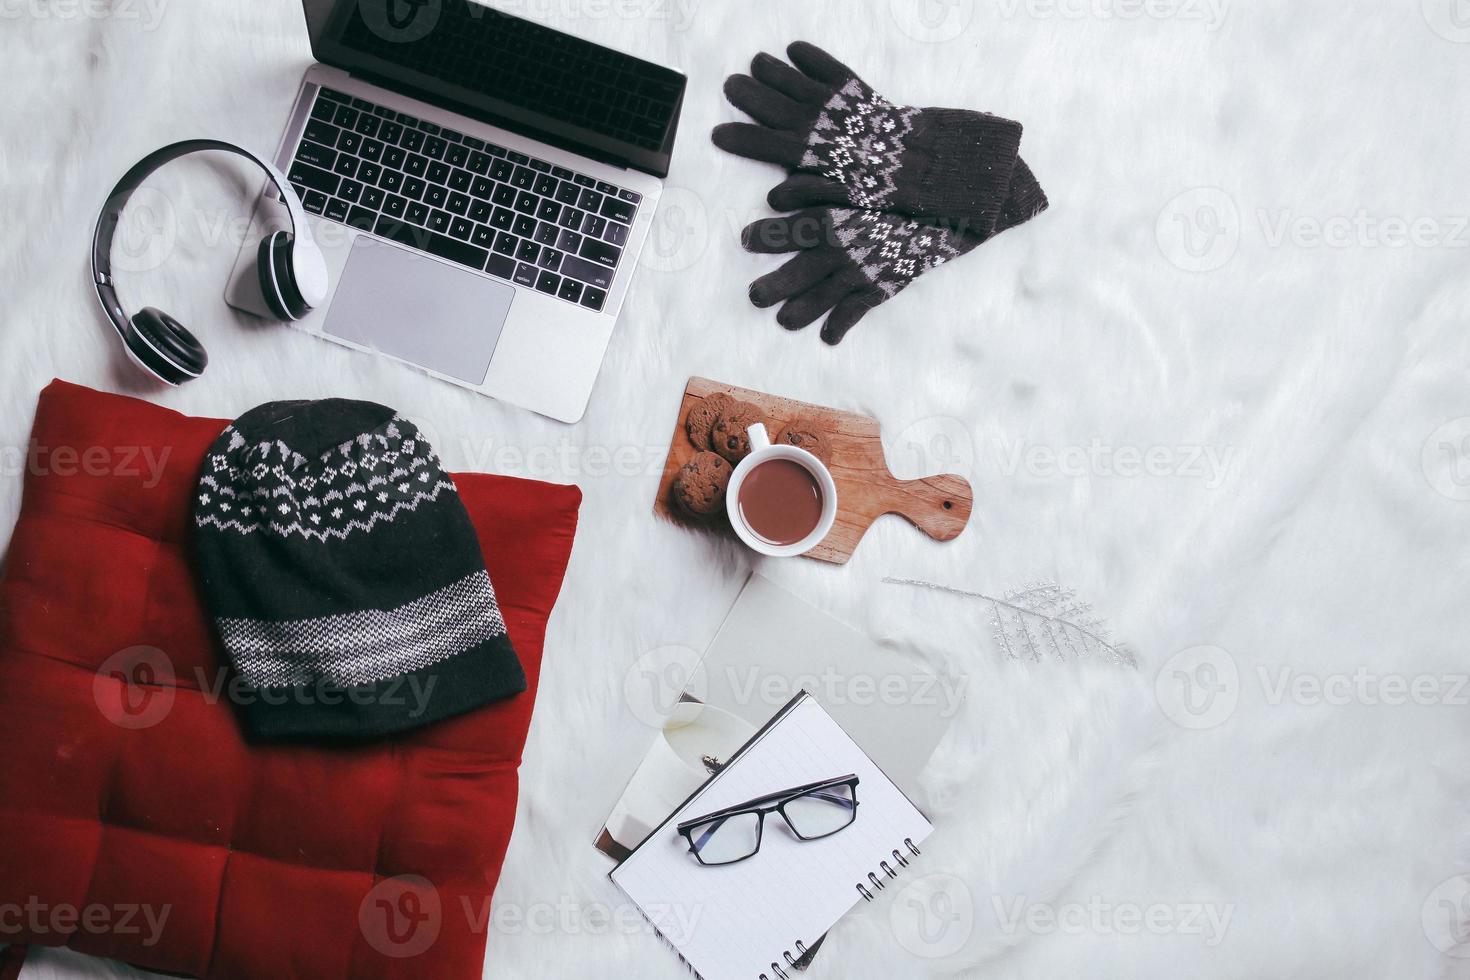 kreative flache Lay-Komposition aus Winterhandschuhen, Mütze und Arbeitszubehör für den Winterhintergrund foto